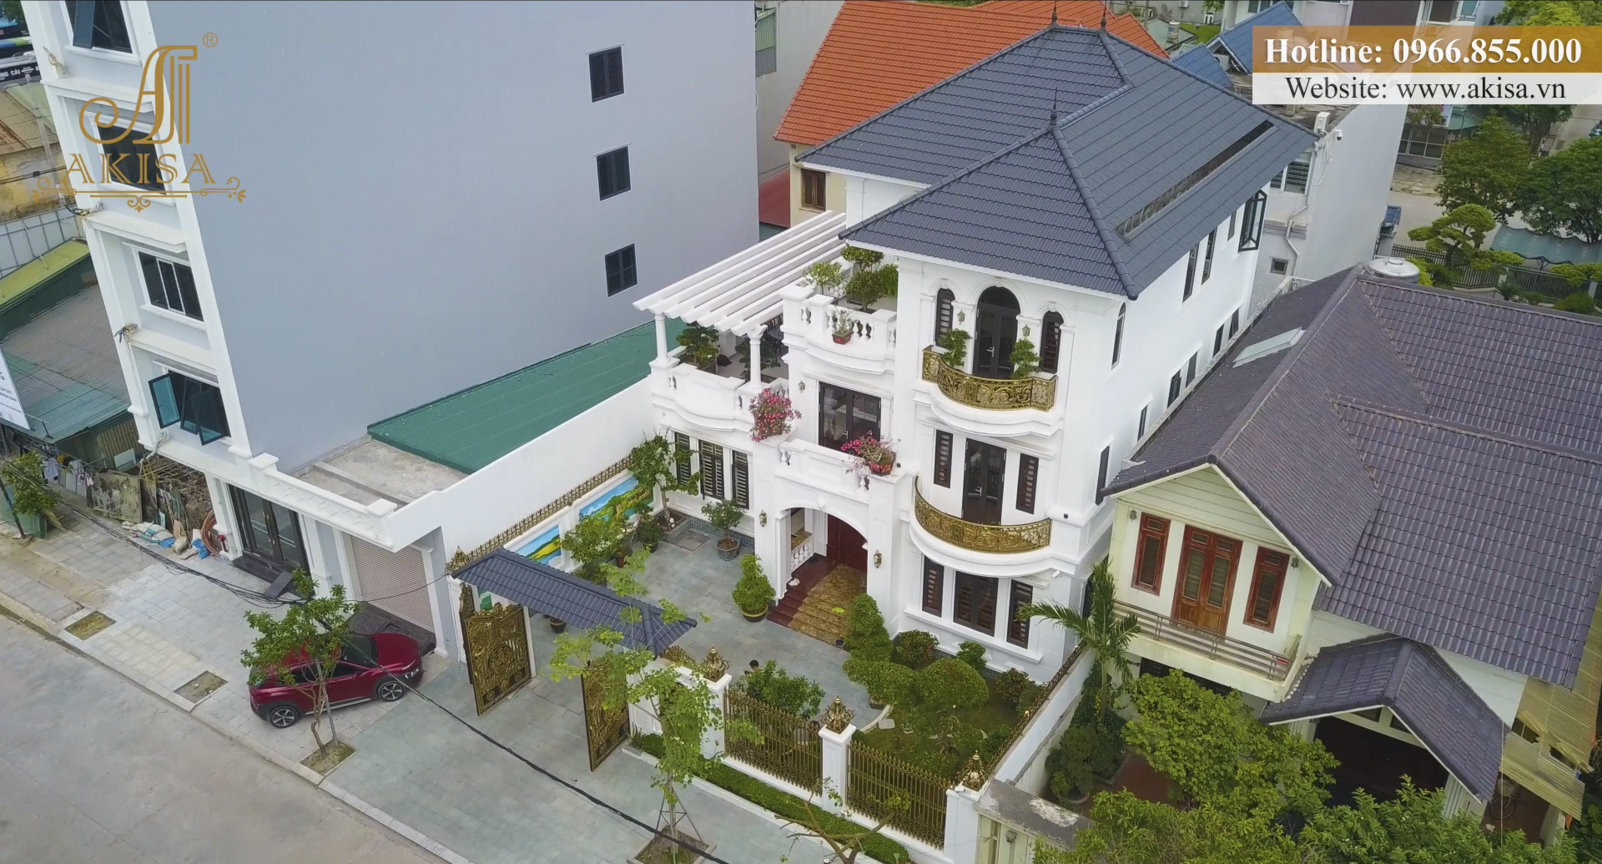 Cập nhật hình ảnh hoàn thiện thi công biệt thự 3 tầng tại Quảng Ninh